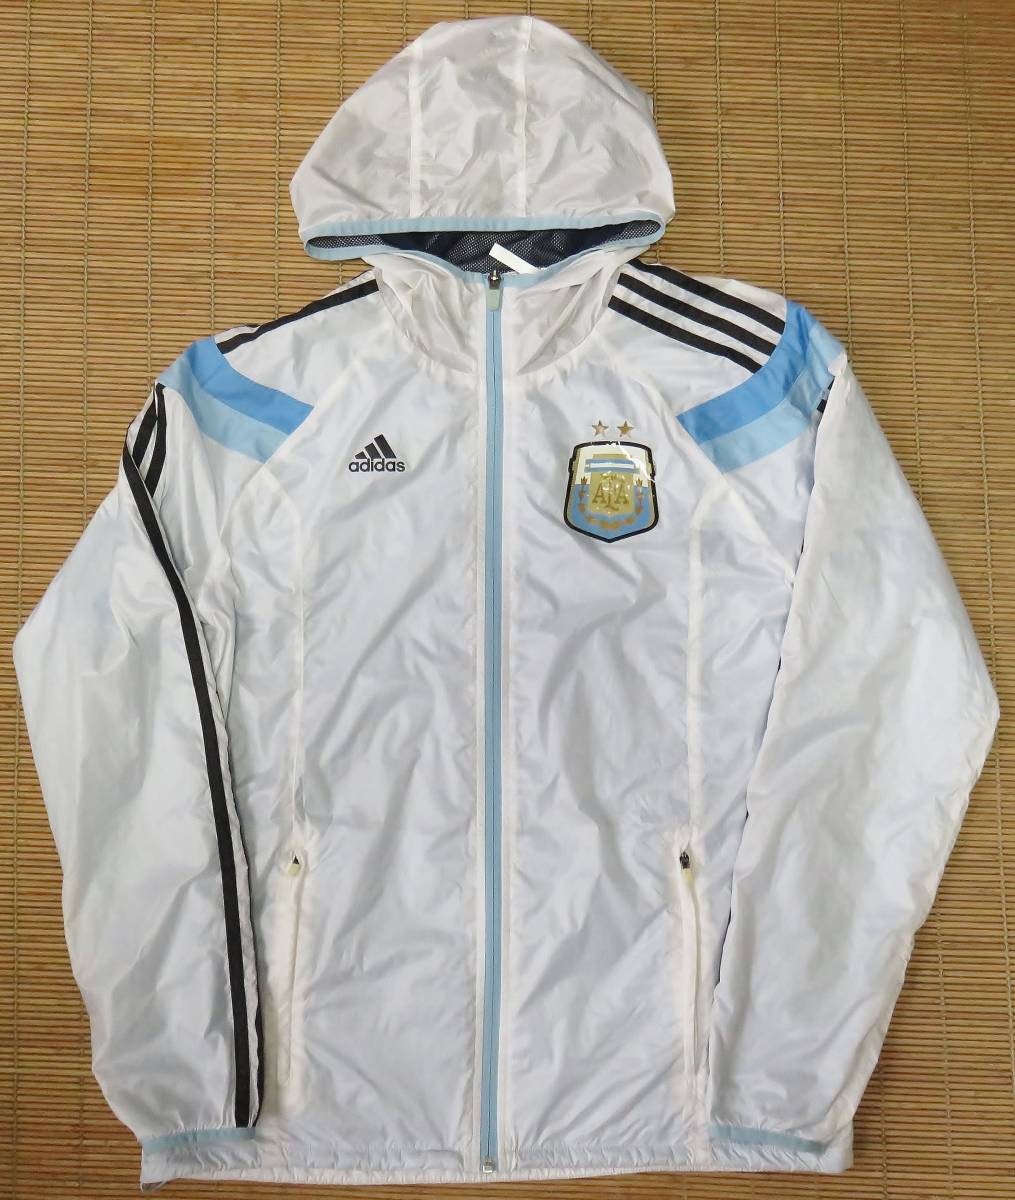 正規品 2014 アルゼンチン代表 アンセムウーブンジャケット/レインジャケット/トレーニング FIFA2014ワールドカップ メッシ